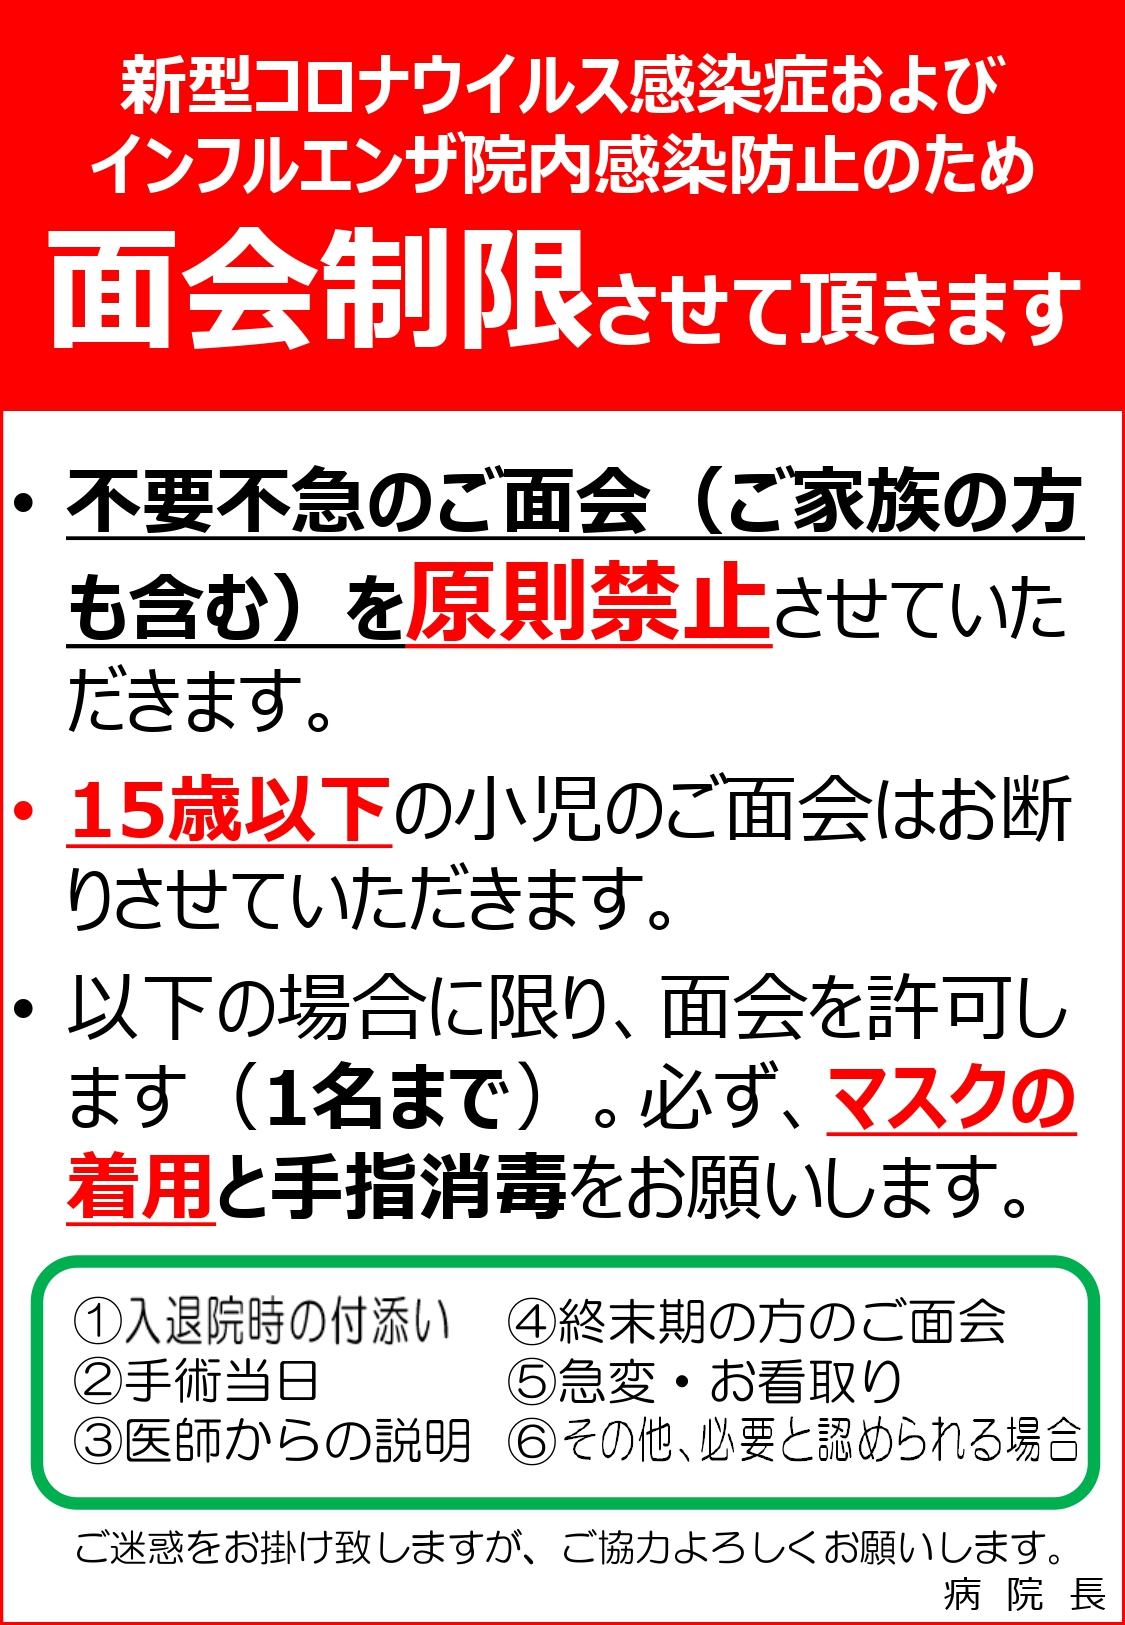 病院 大阪 コロナ 赤十字 【コロナウイルス】逼迫する大阪の救急医療体制